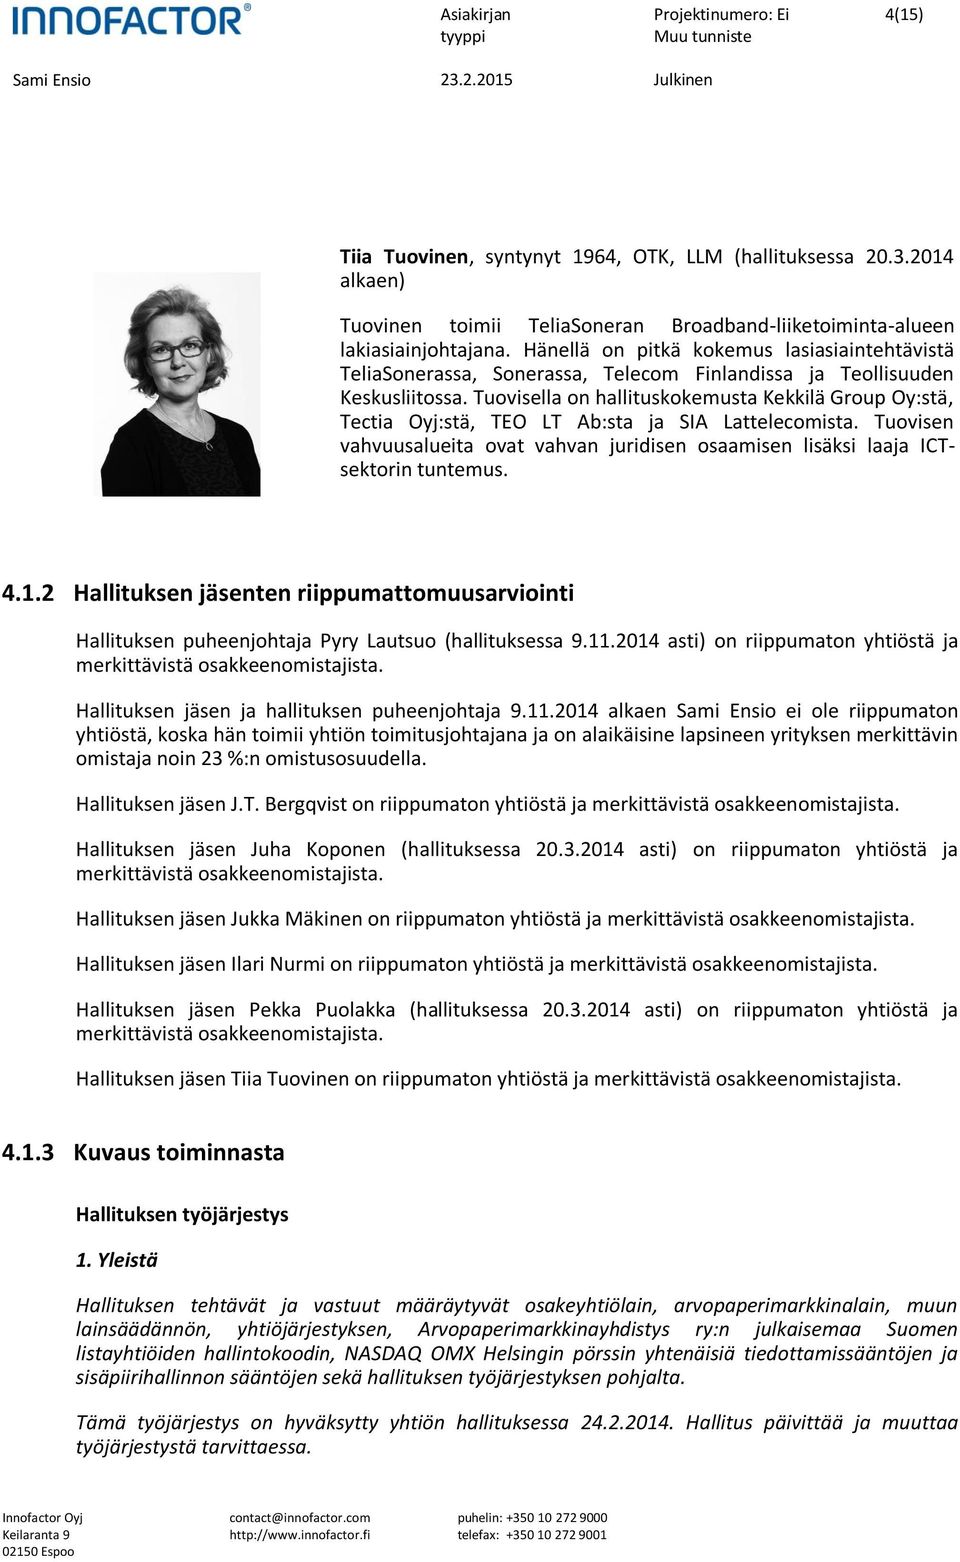 Tuovisella on hallituskokemusta Kekkilä Group Oy:stä, Tectia Oyj:stä, TEO LT Ab:sta ja SIA Lattelecomista. Tuovisen vahvuusalueita ovat vahvan juridisen osaamisen lisäksi laaja ICTsektorin tuntemus.